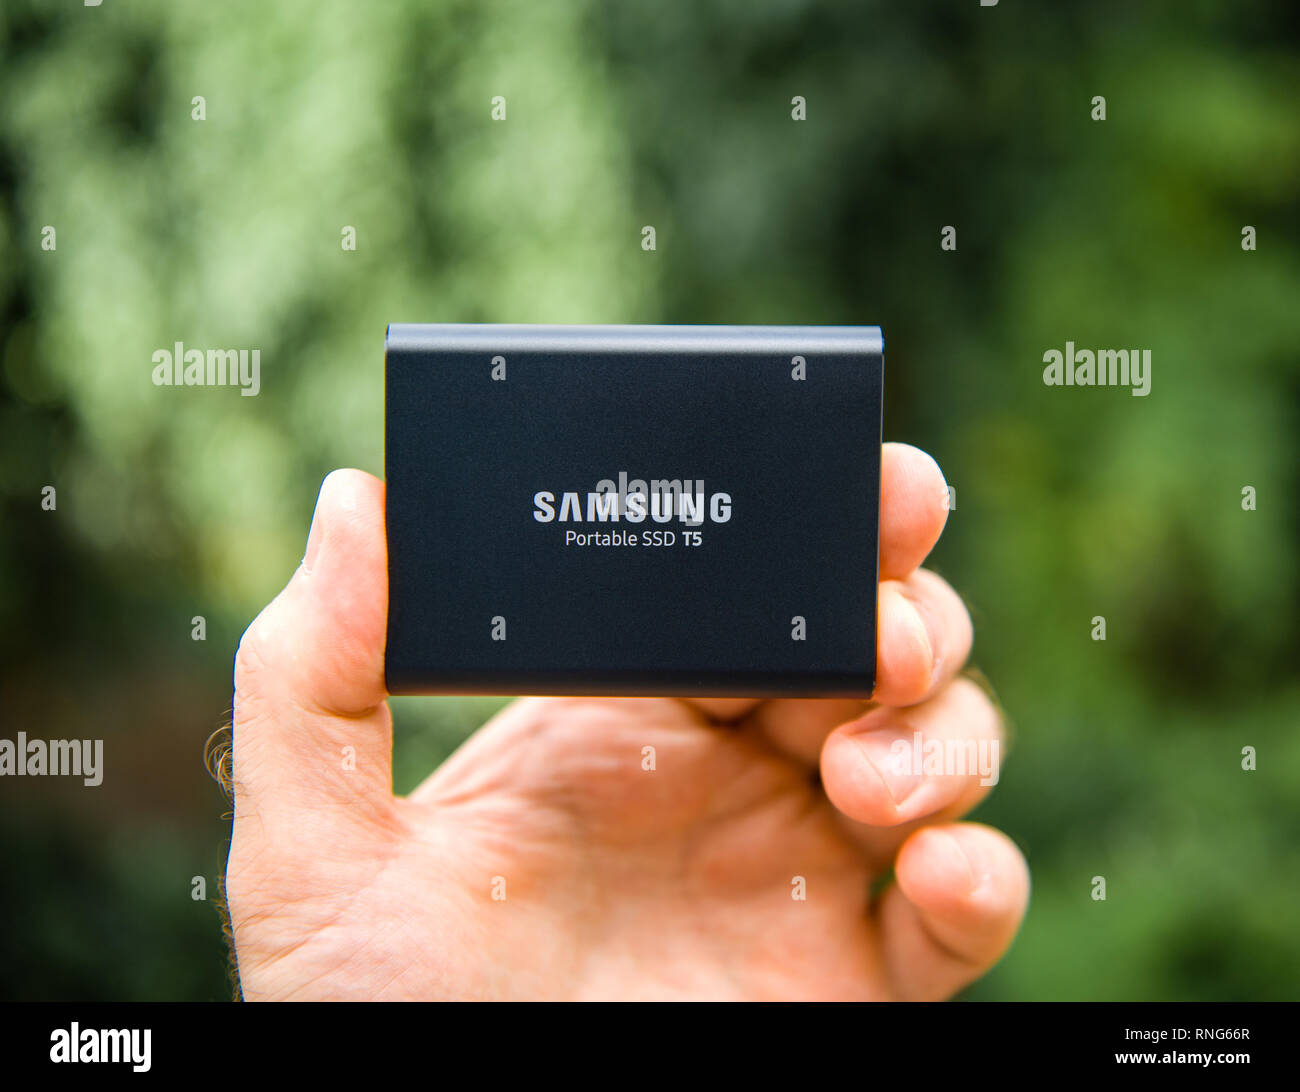 Parigi, Francia - 14 Ago, 2018: Man mano che tiene Samsung T5 SSD portatile 2 TB di disco rigido esterno disco con elevata velocità di lettura e scrittura contro lo sfondo di colore verde unboxing di testing Foto Stock